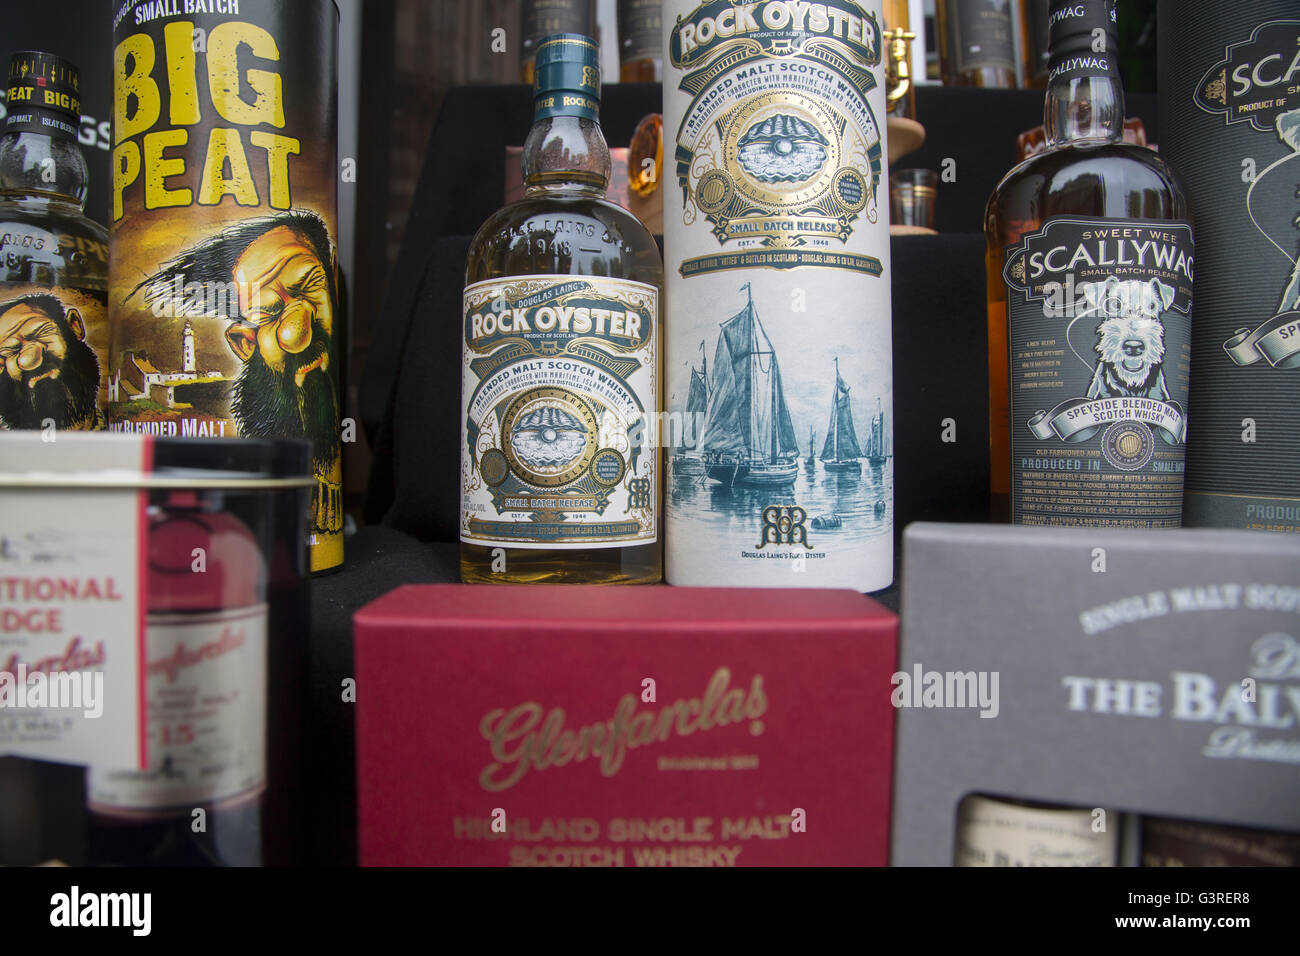 SCALLYWAG und Rock-Oyster-Whisky-Flaschen; Edinburgh; Schottland Stockfoto